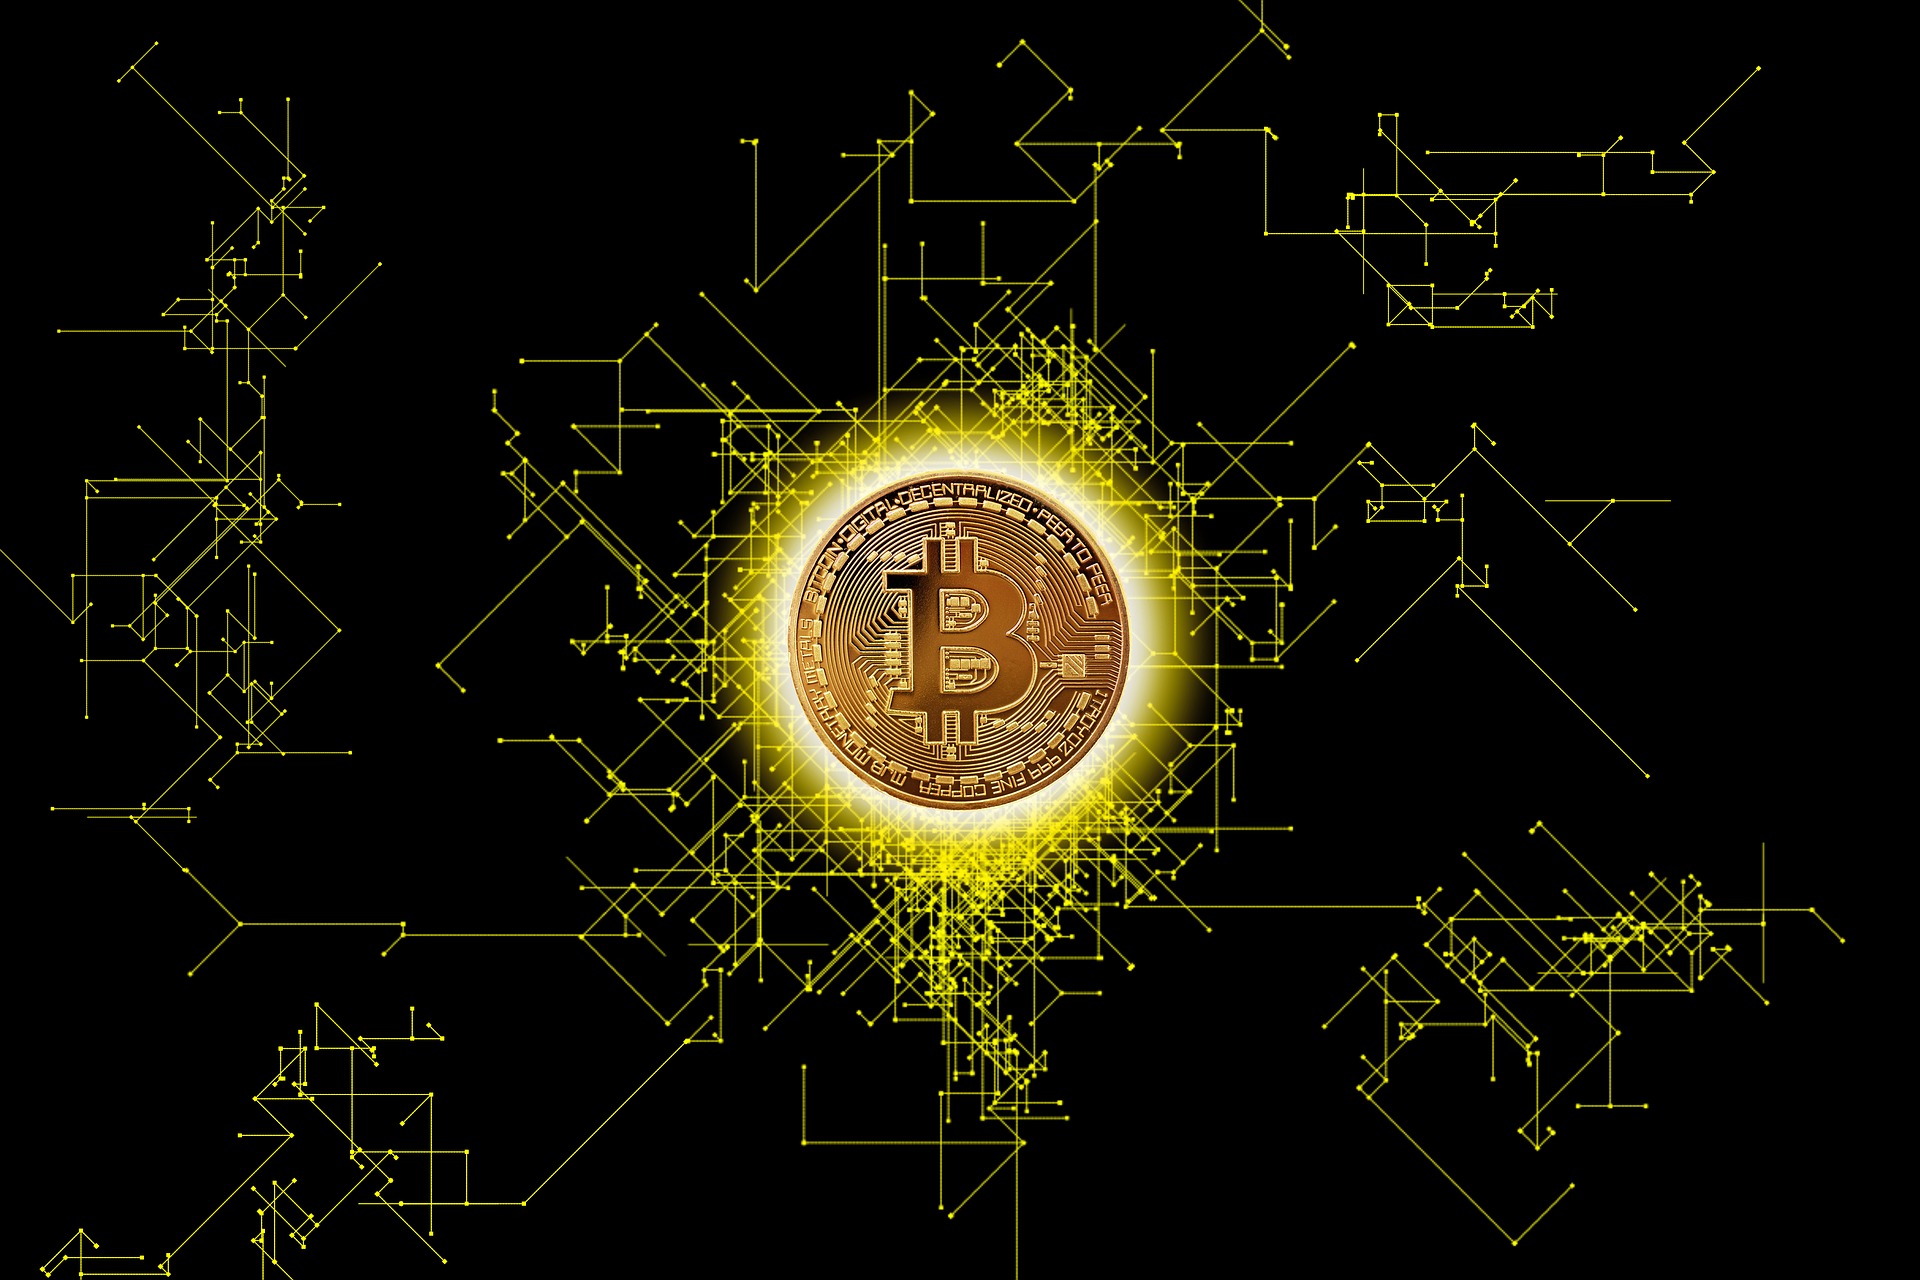 Bitcoin Blockchain